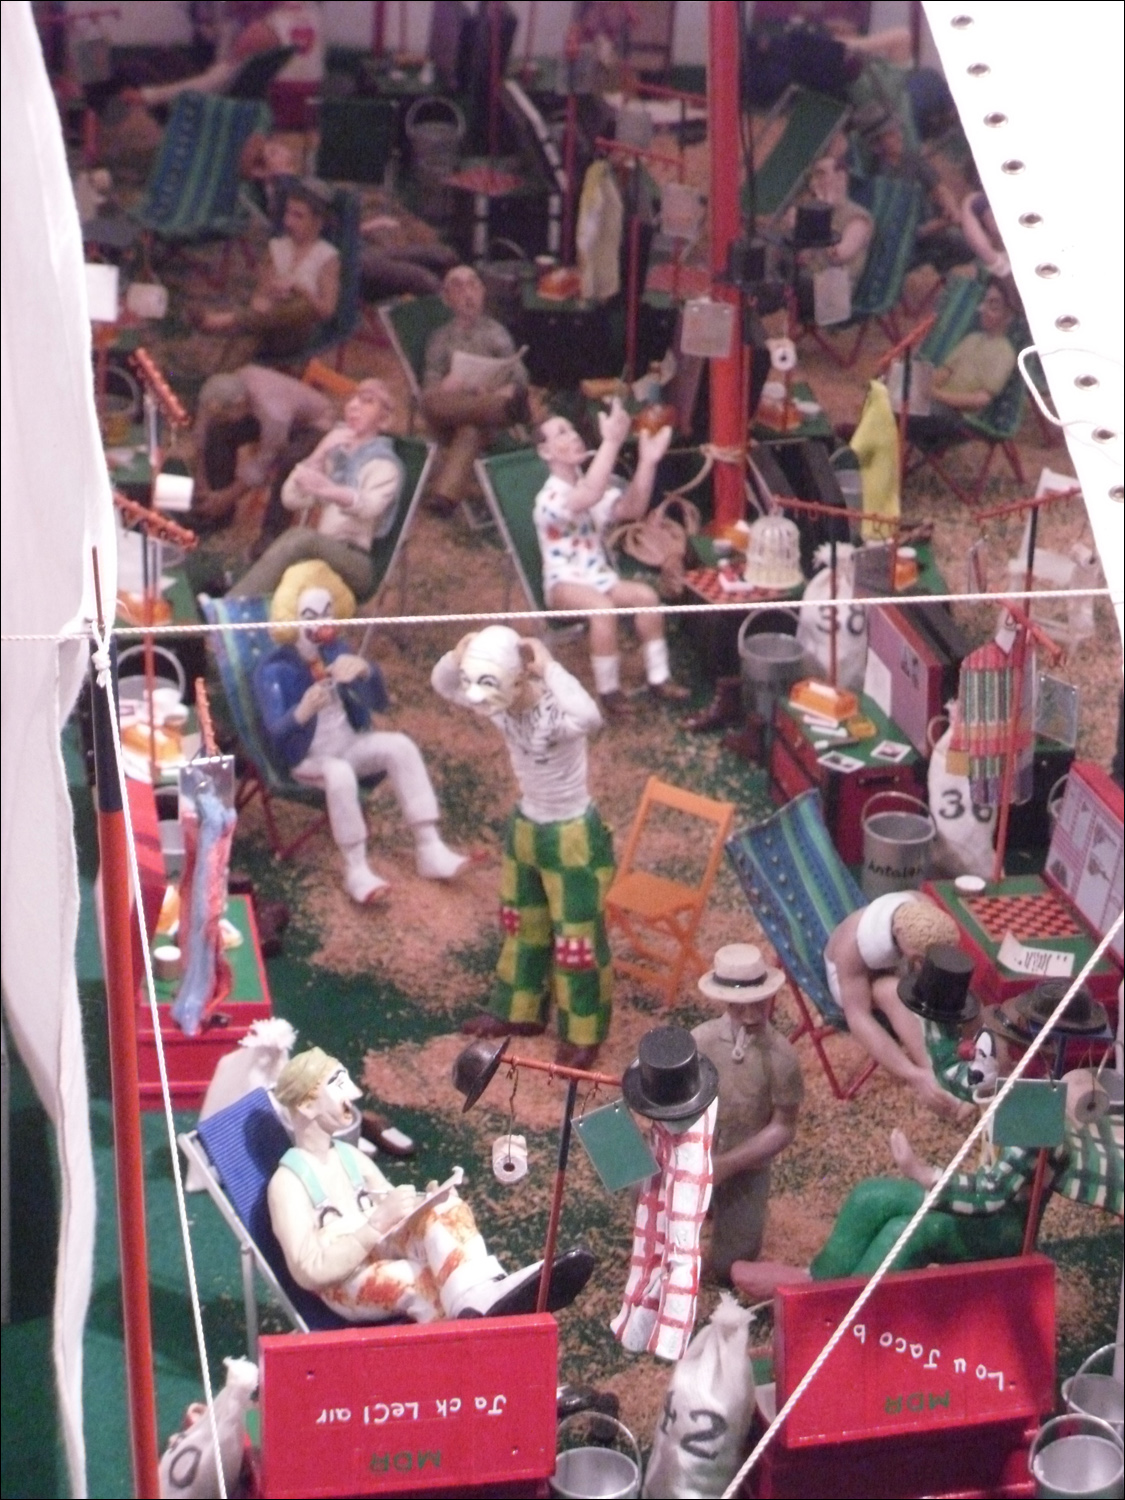 John & Mabel Ringling Museum-miniature (3500 sq ft) big top-clown prep tent